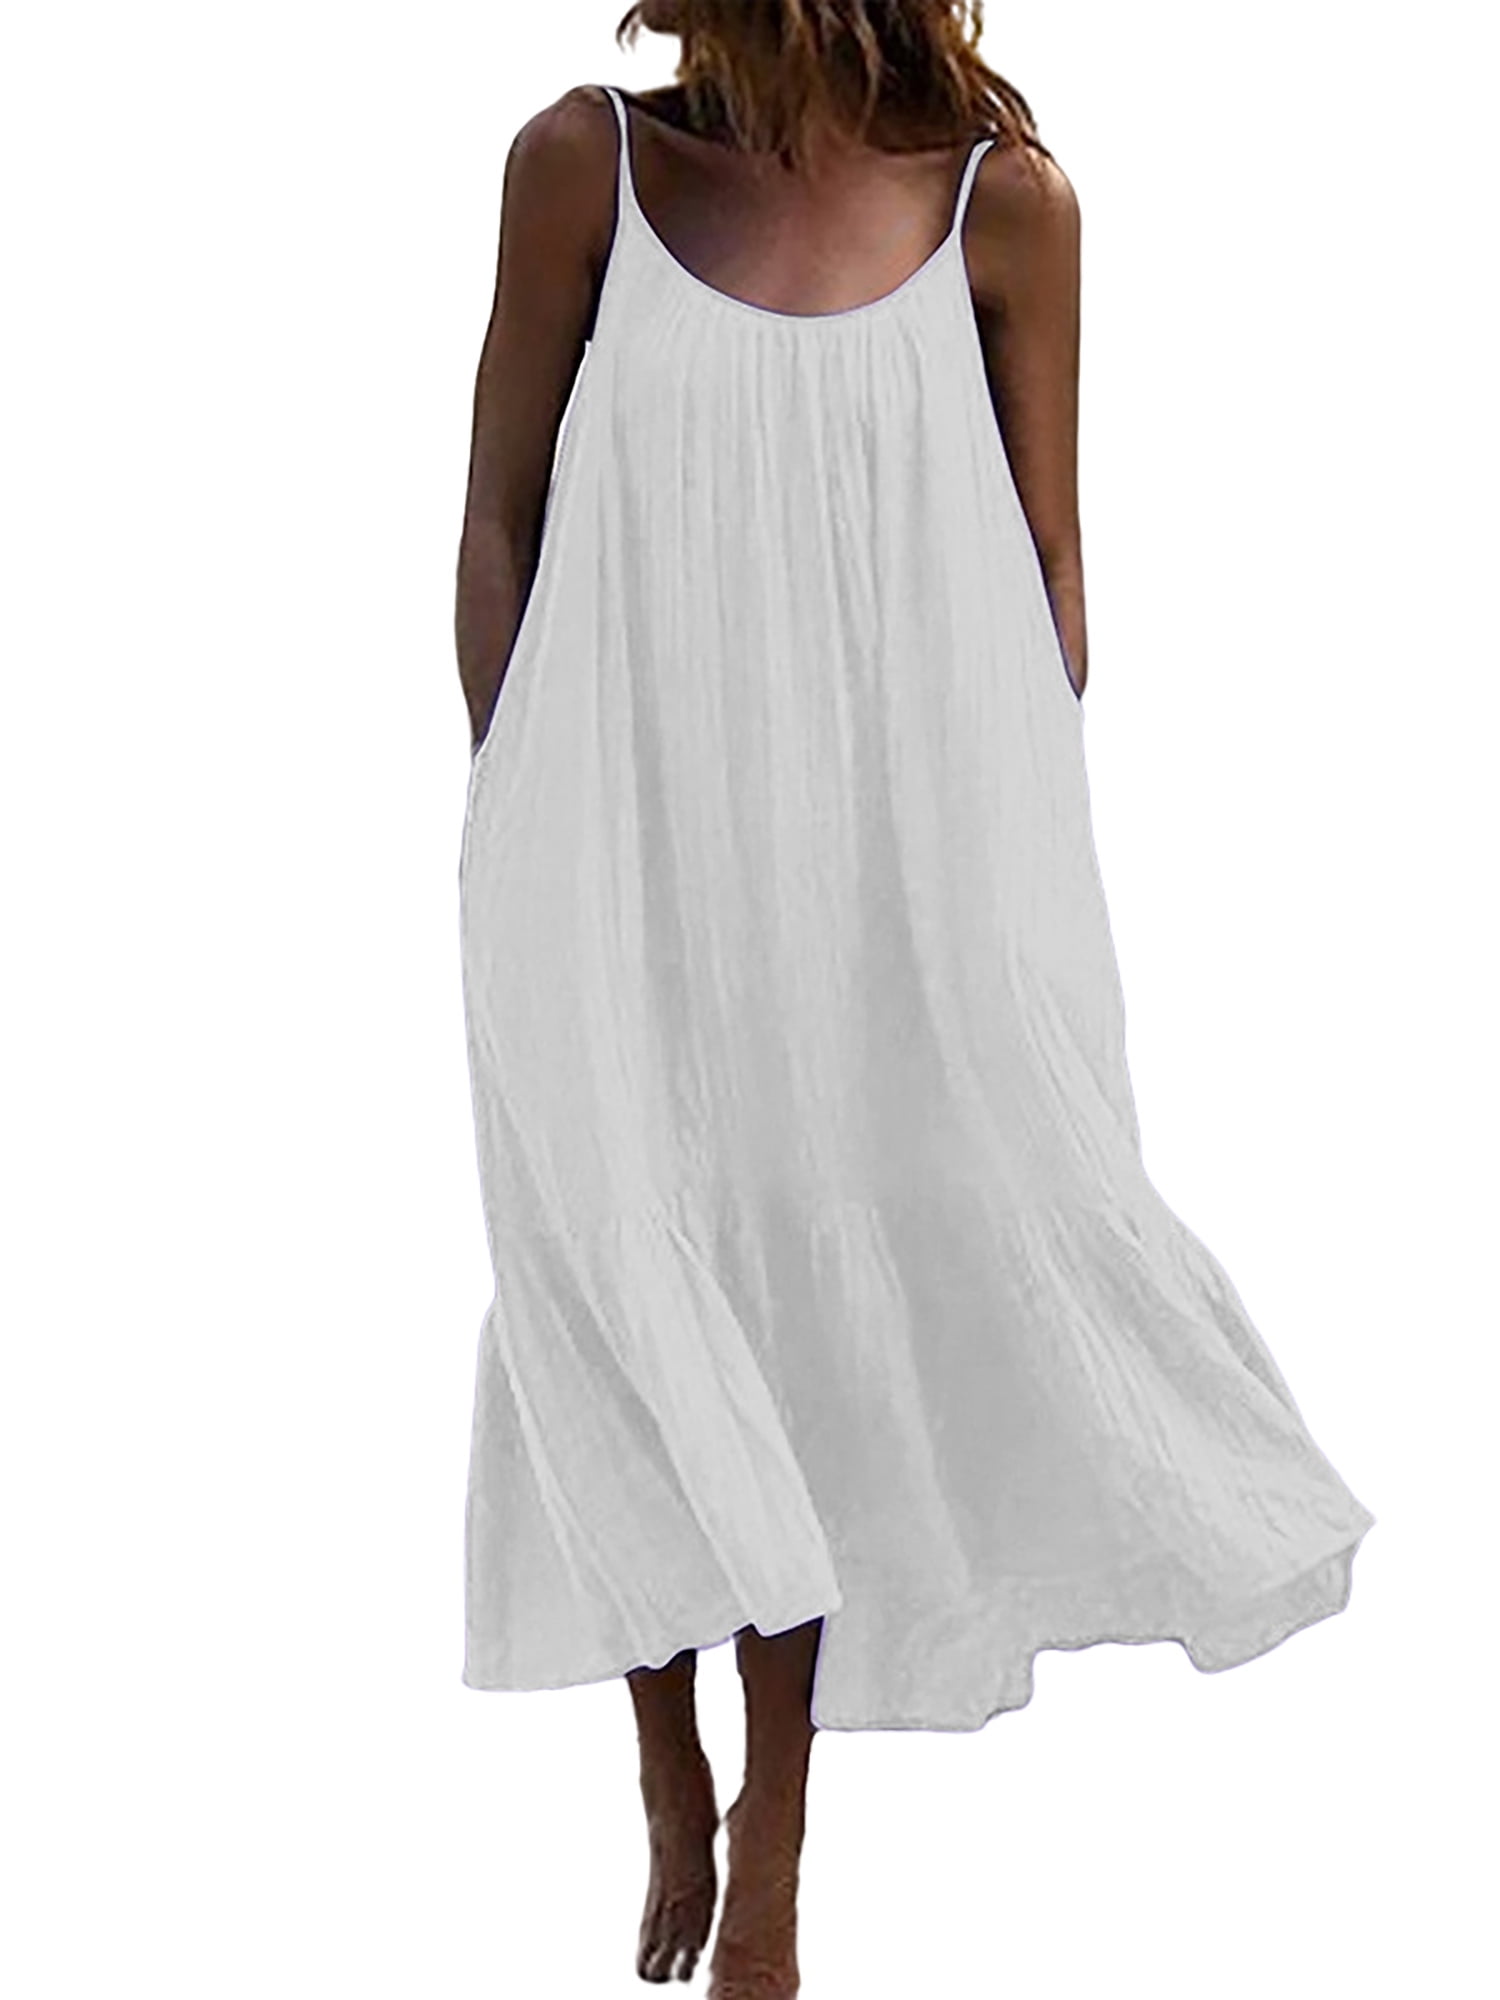 Women Cotton Strappy Bow Long Shirt Dress Summer Beach Solid Maxi Tank Sundress